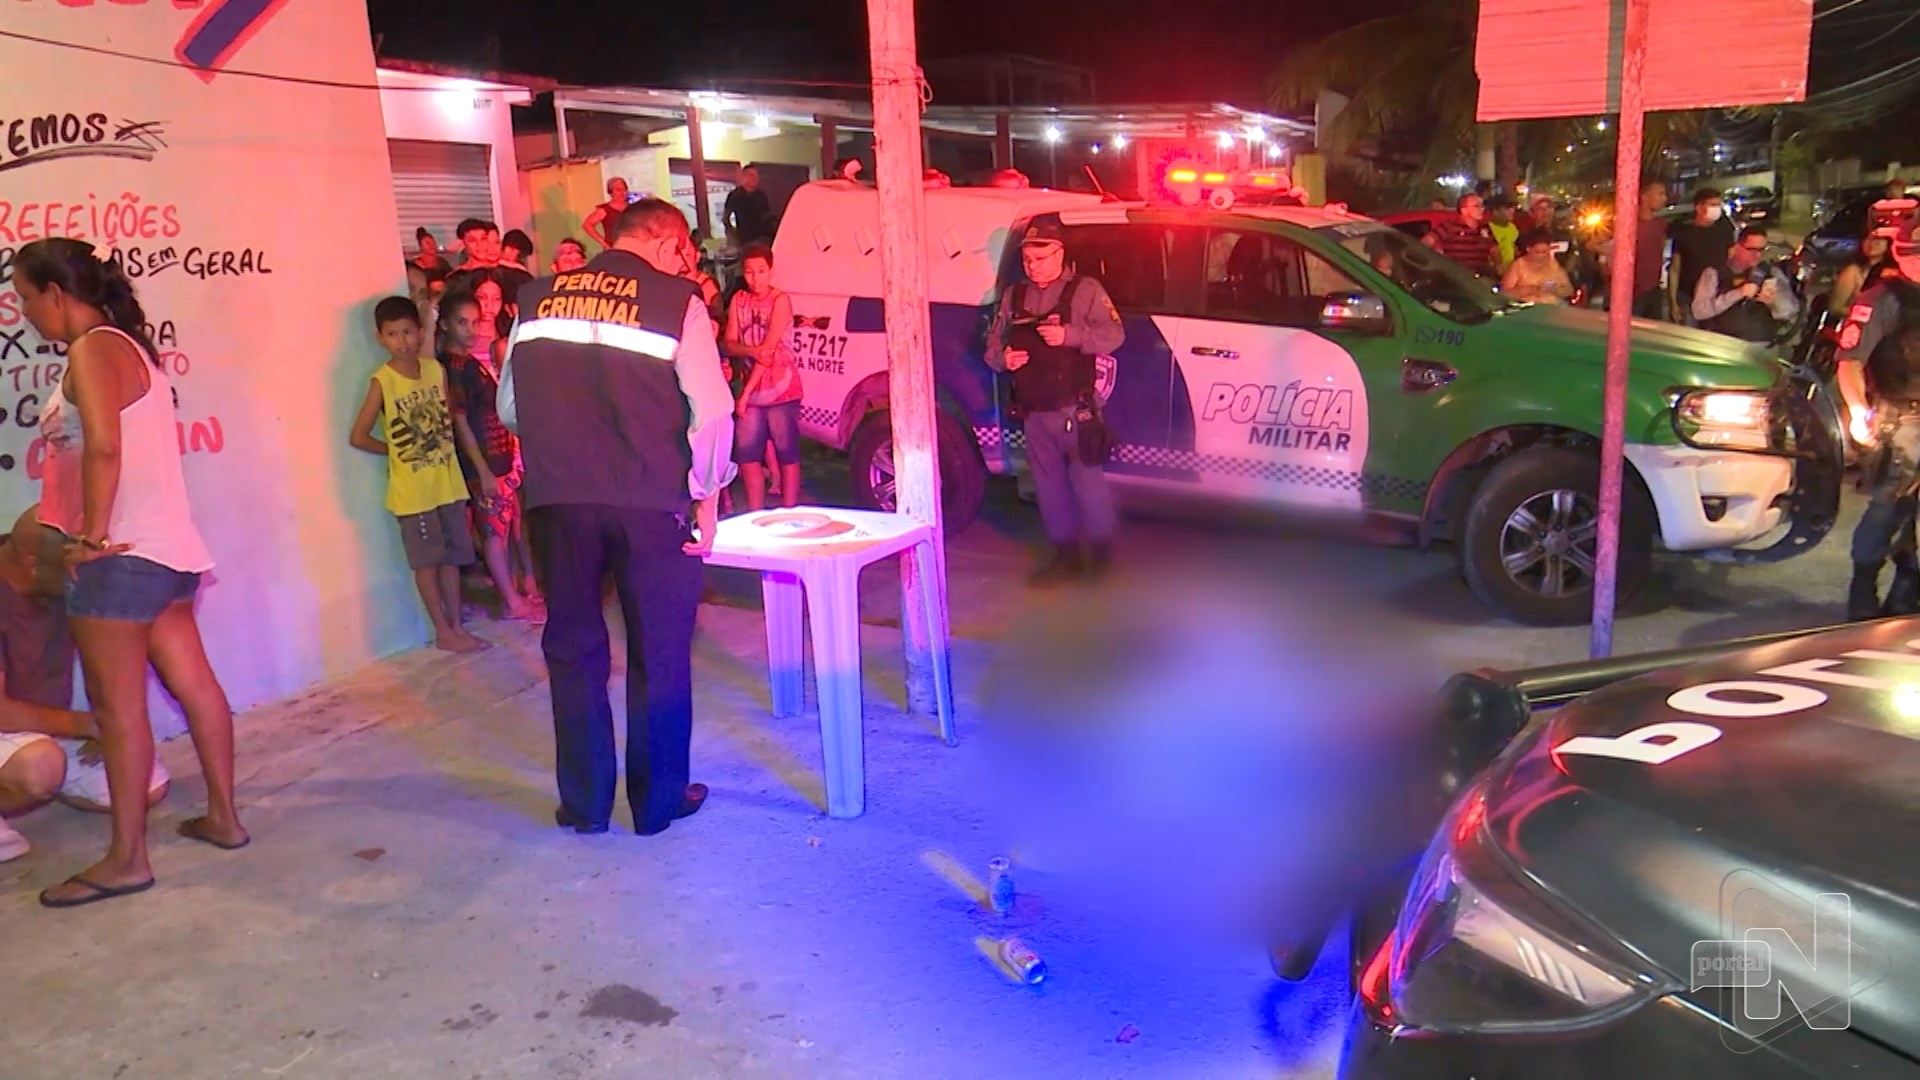 Homem é morto a tiros enquanto bebia em bar na Zona Norte de Manaus - Foto: Reprodução/TV Norte Amazonas